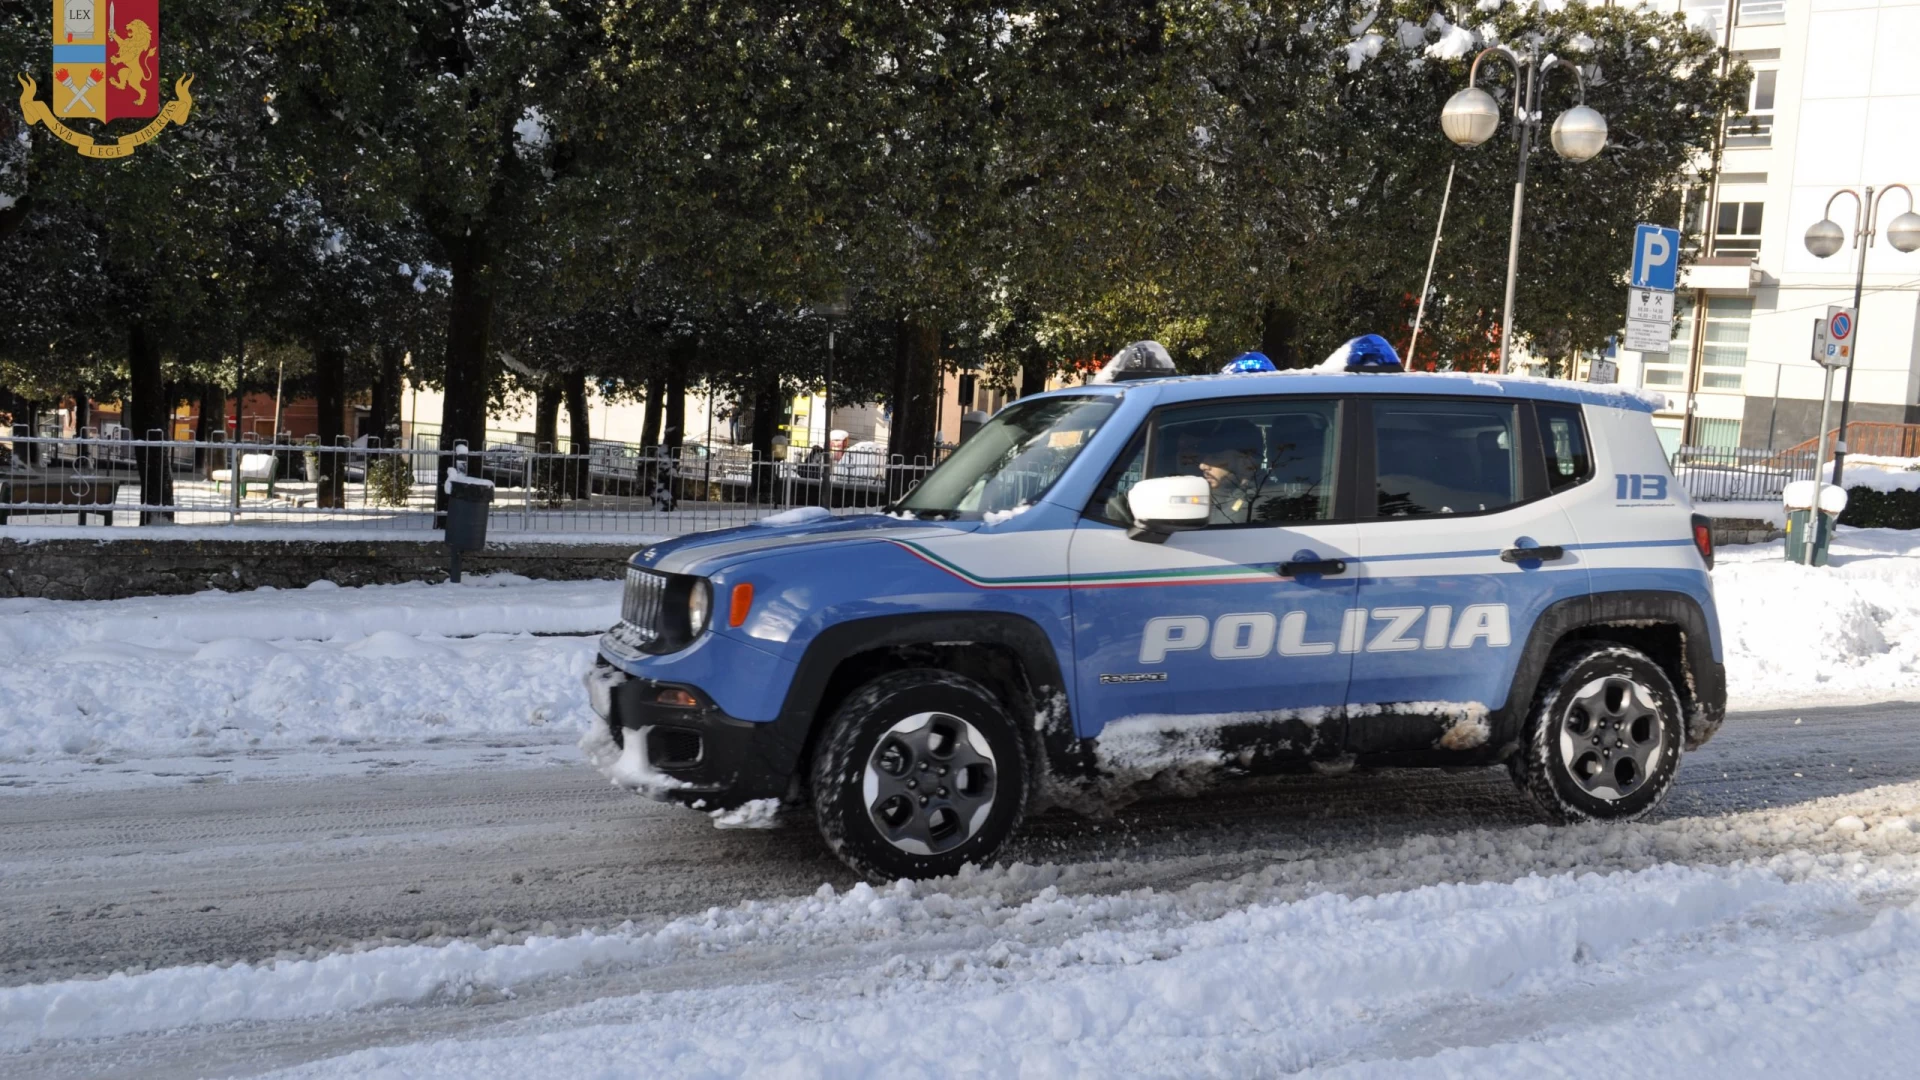 Emergenza neve , la Polizia di Stato moltiplica la presenza ed i controlli sul territorio provinciale. Guarda il video.